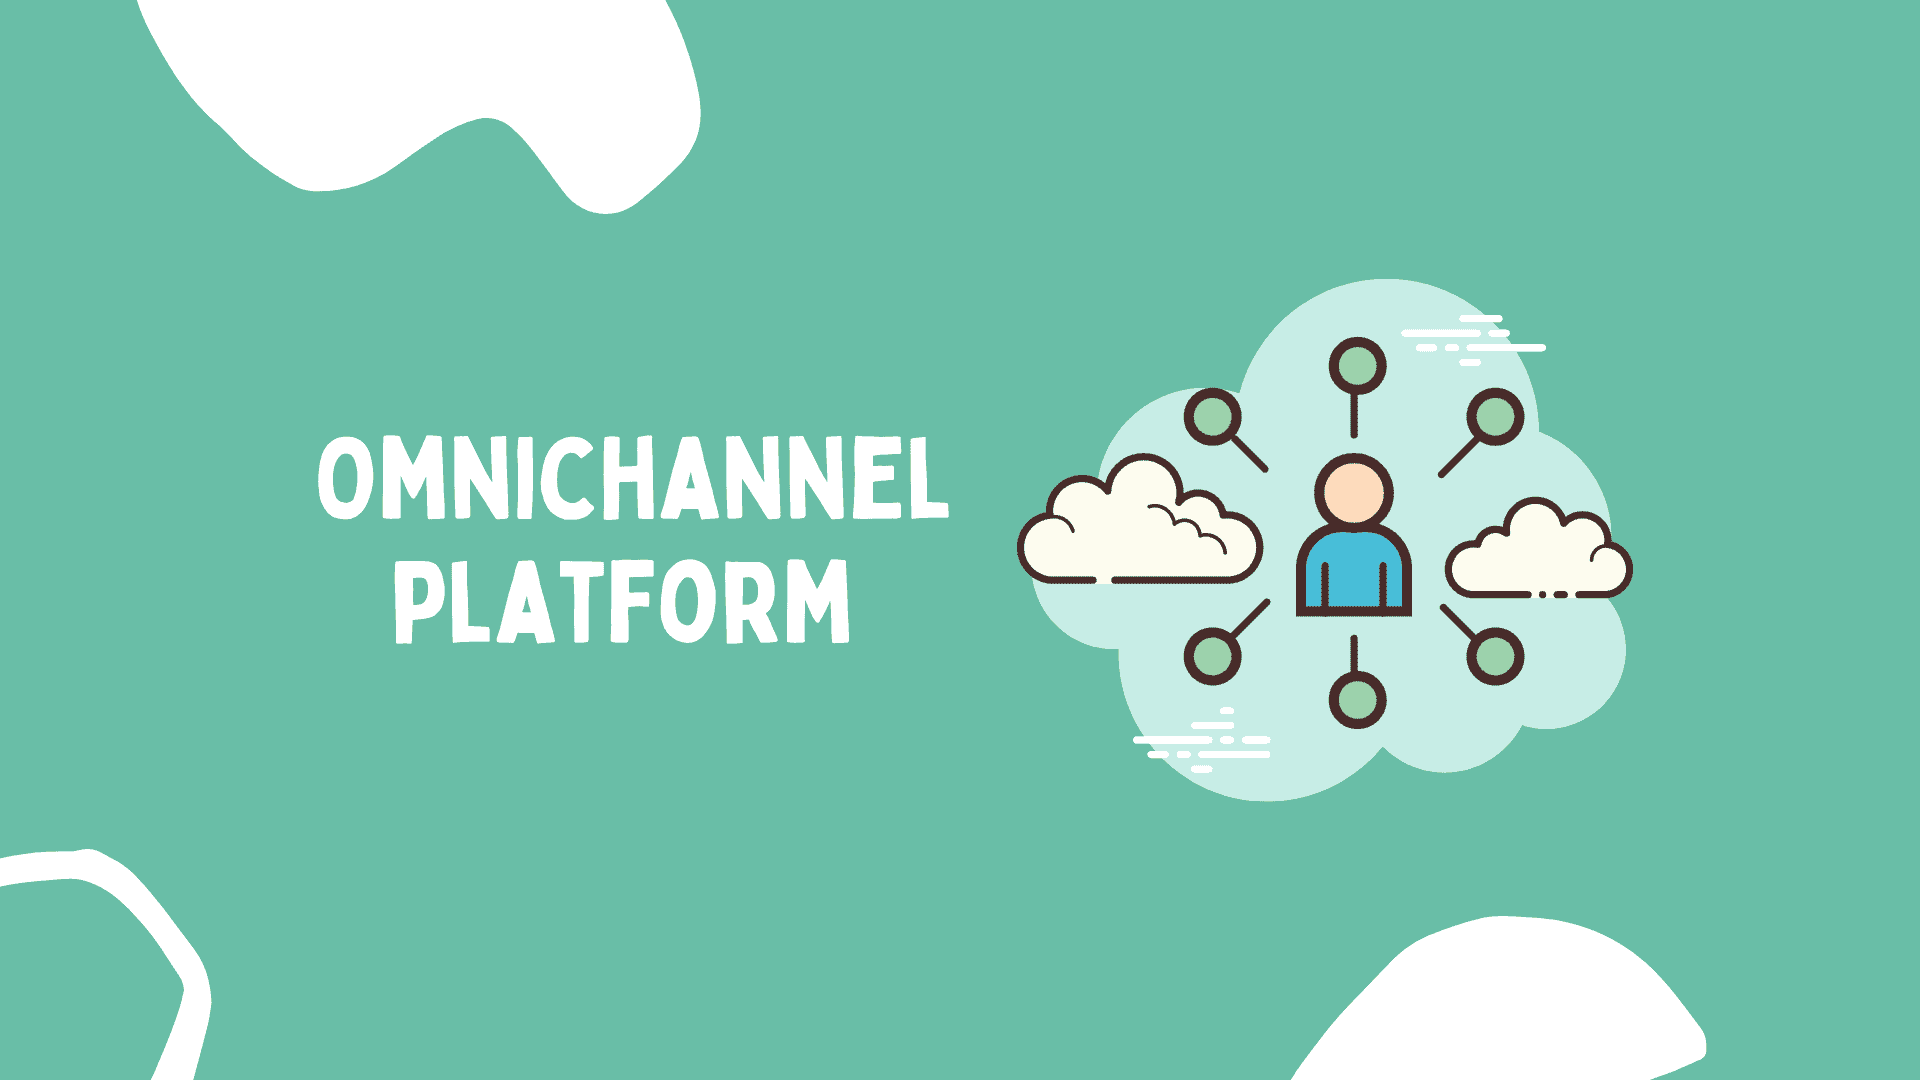 Omnichannel platform for support